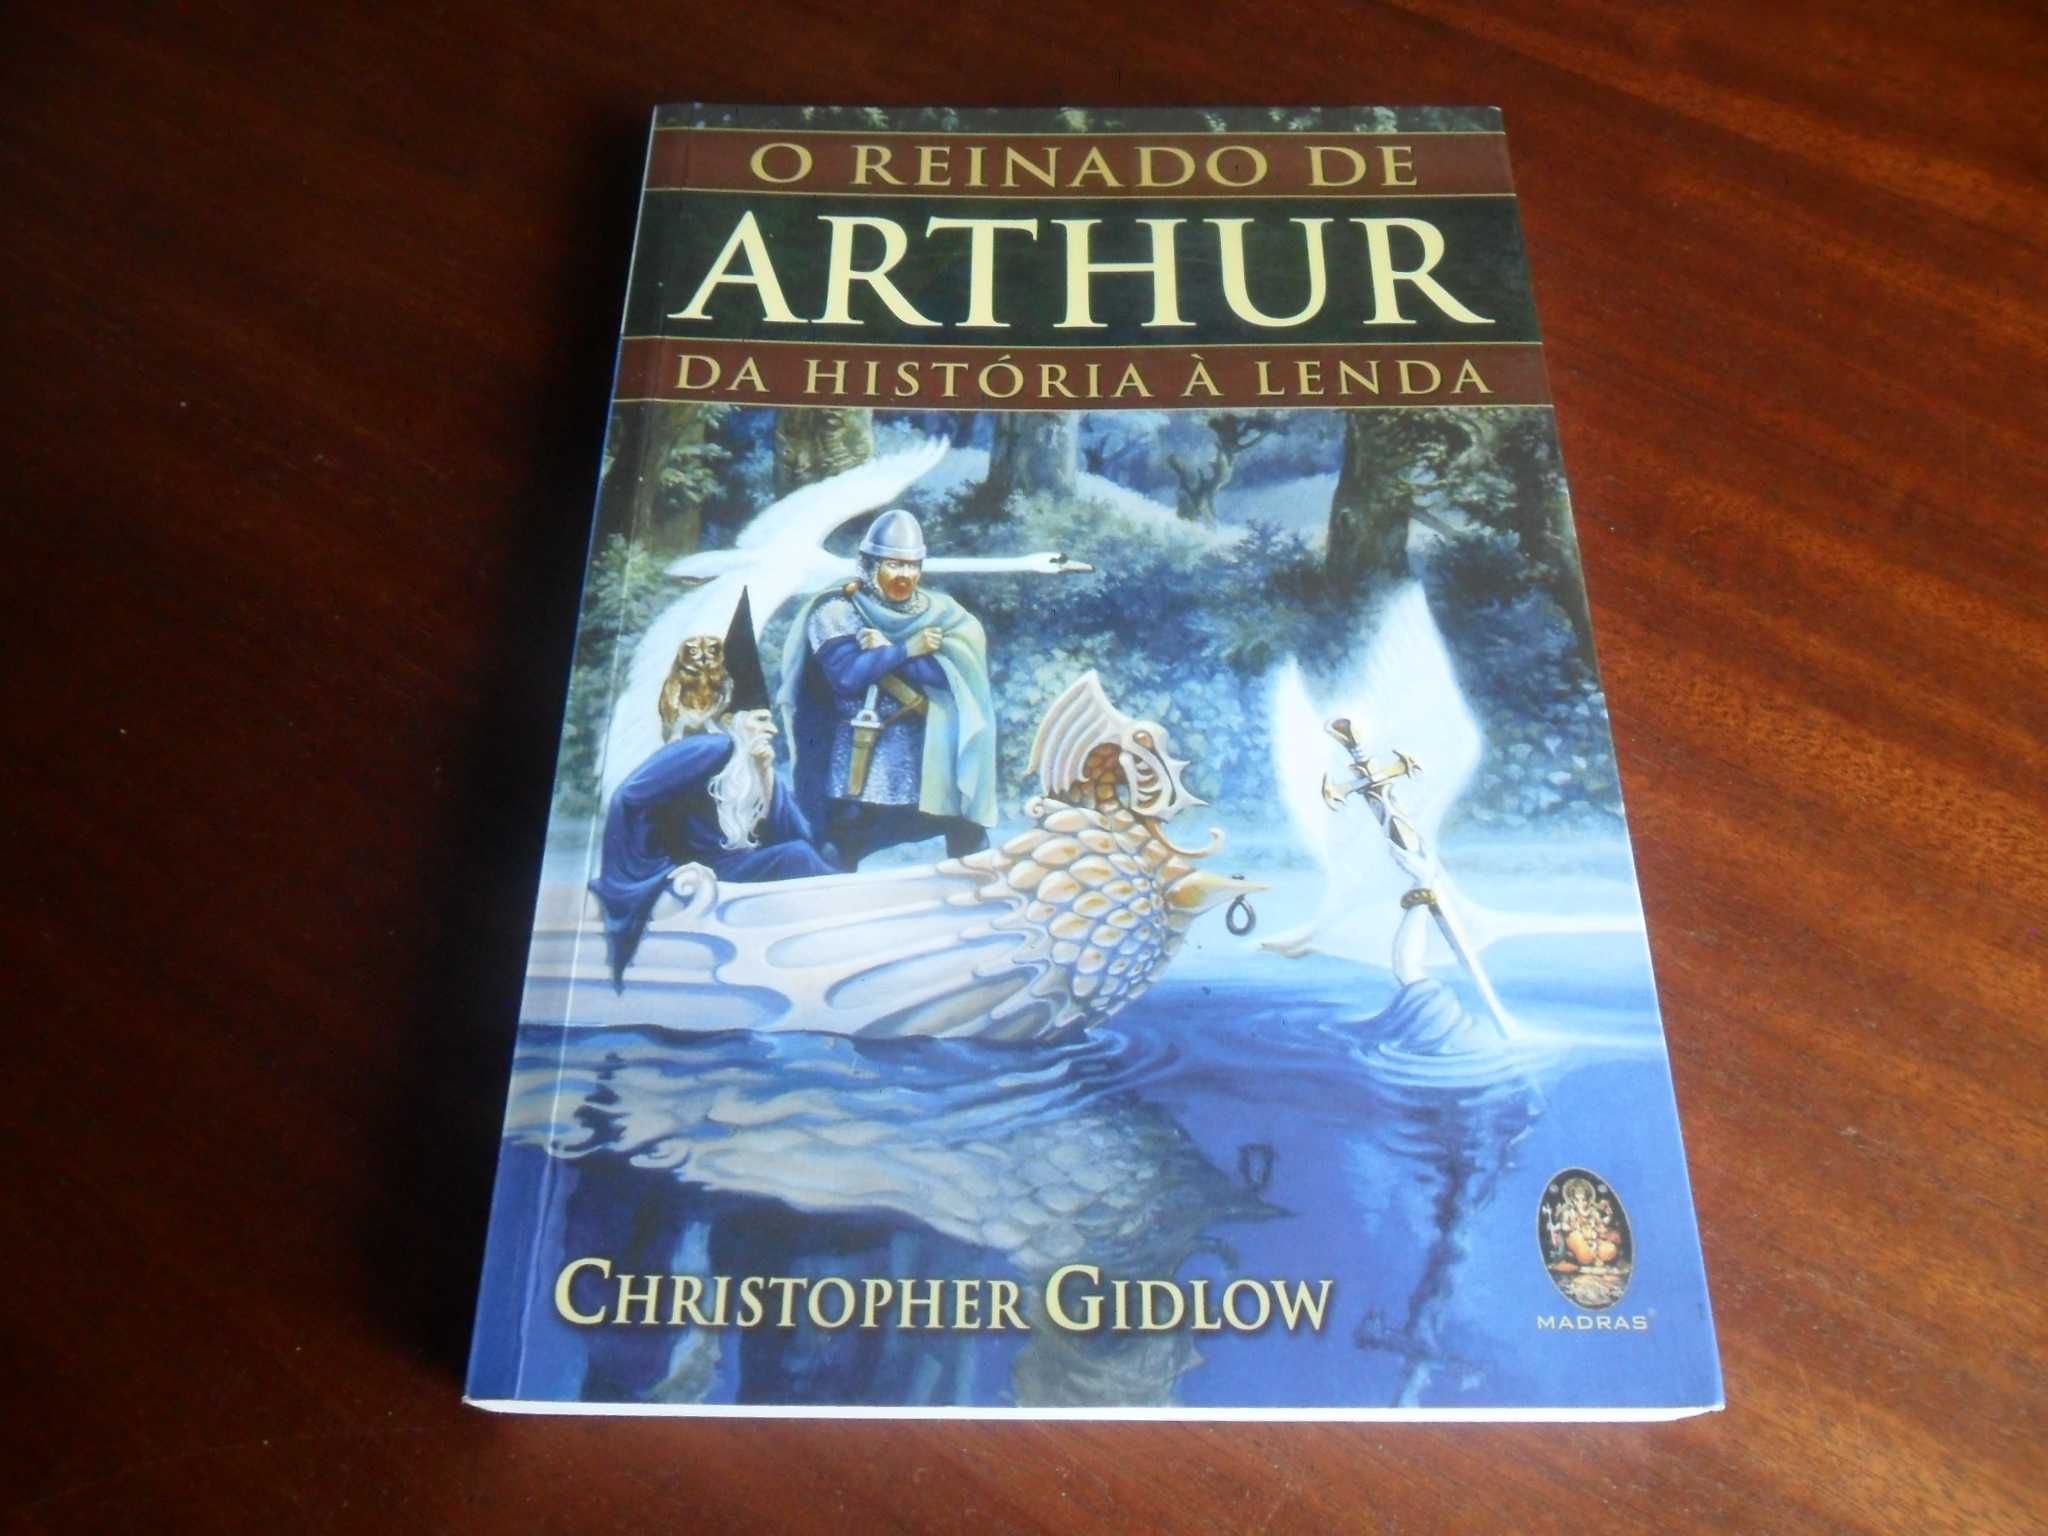 "O Reinado de Arthur" - Da História à Lenda de Chistopher Gidlow